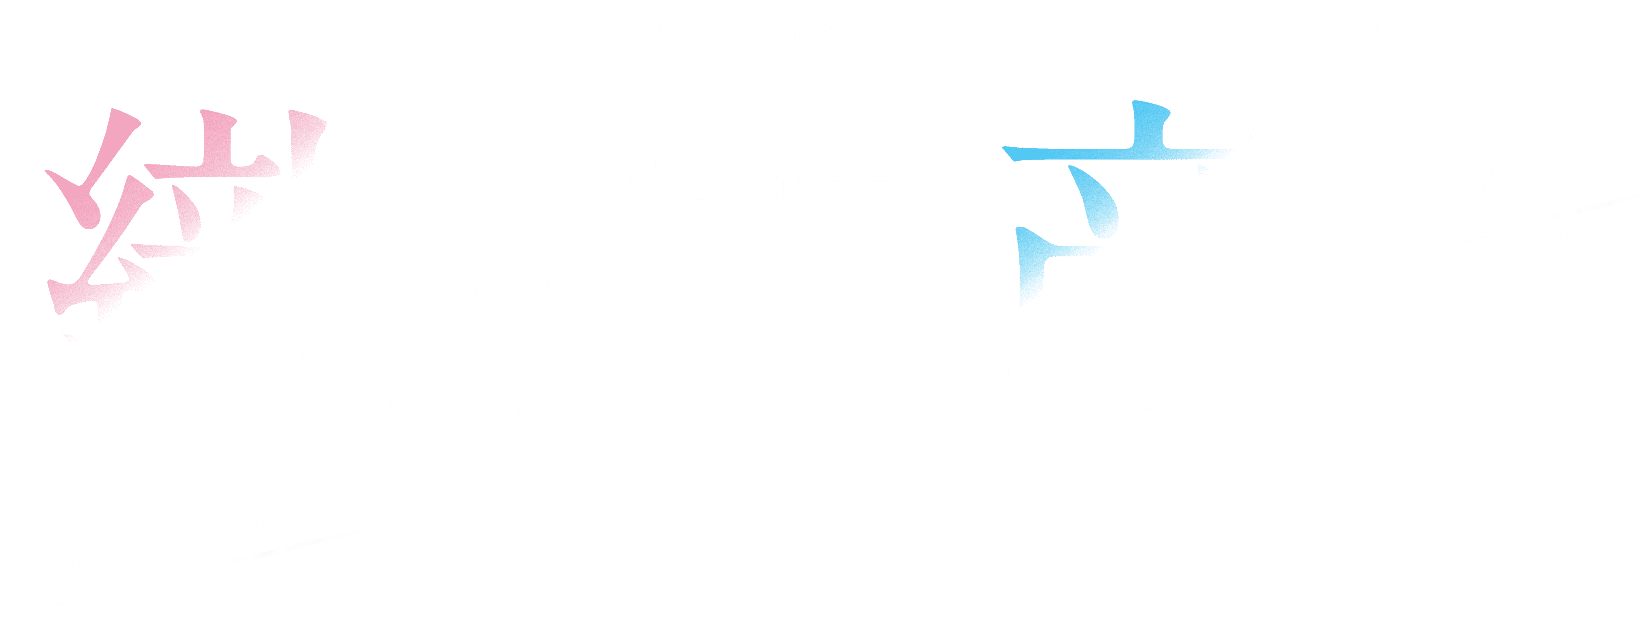 コスモプラネタリウム渋谷×SHIBUYA SKY 渋谷meets 織姫星と彦星